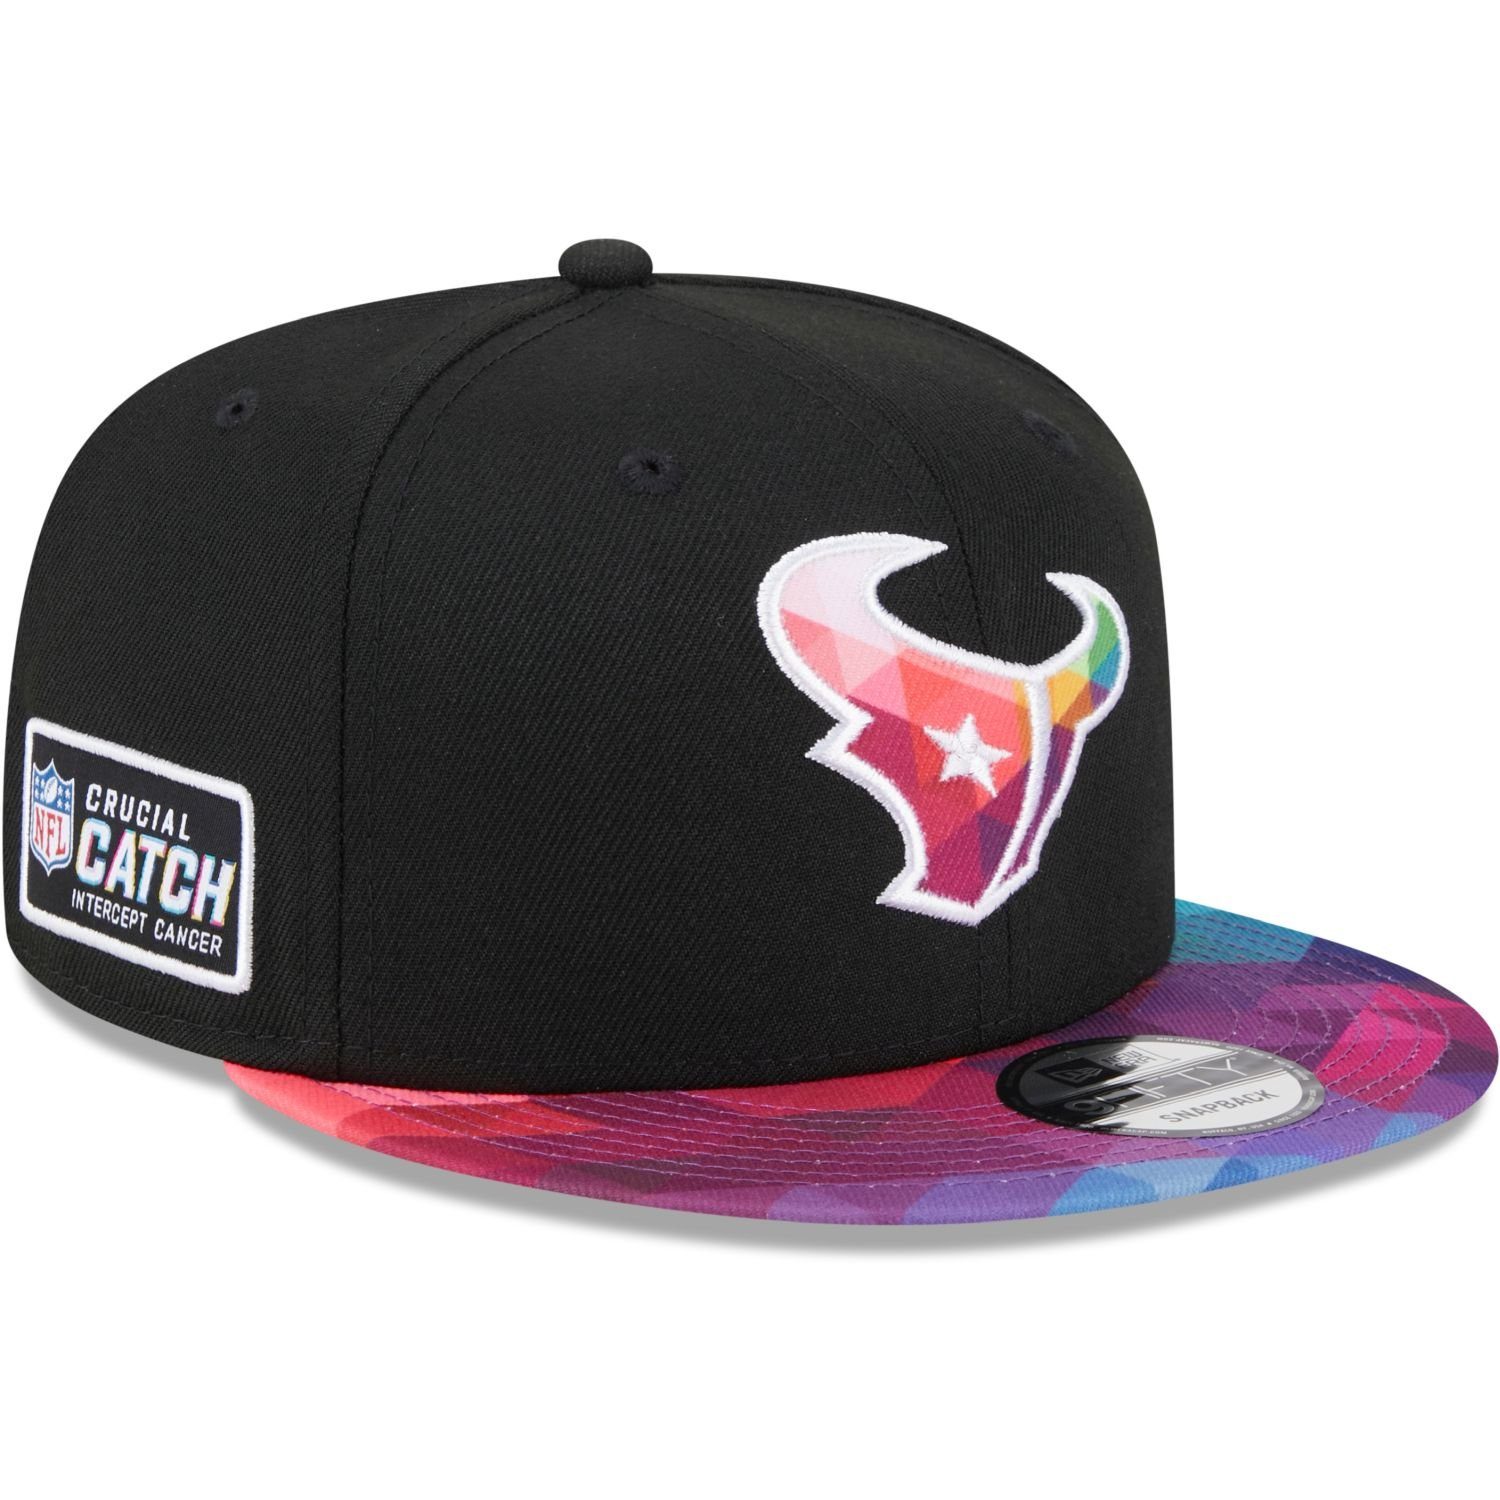 CATCH Teams Houston 9FIFTY Era Snapback Cap NFL New Texans CRUCIAL